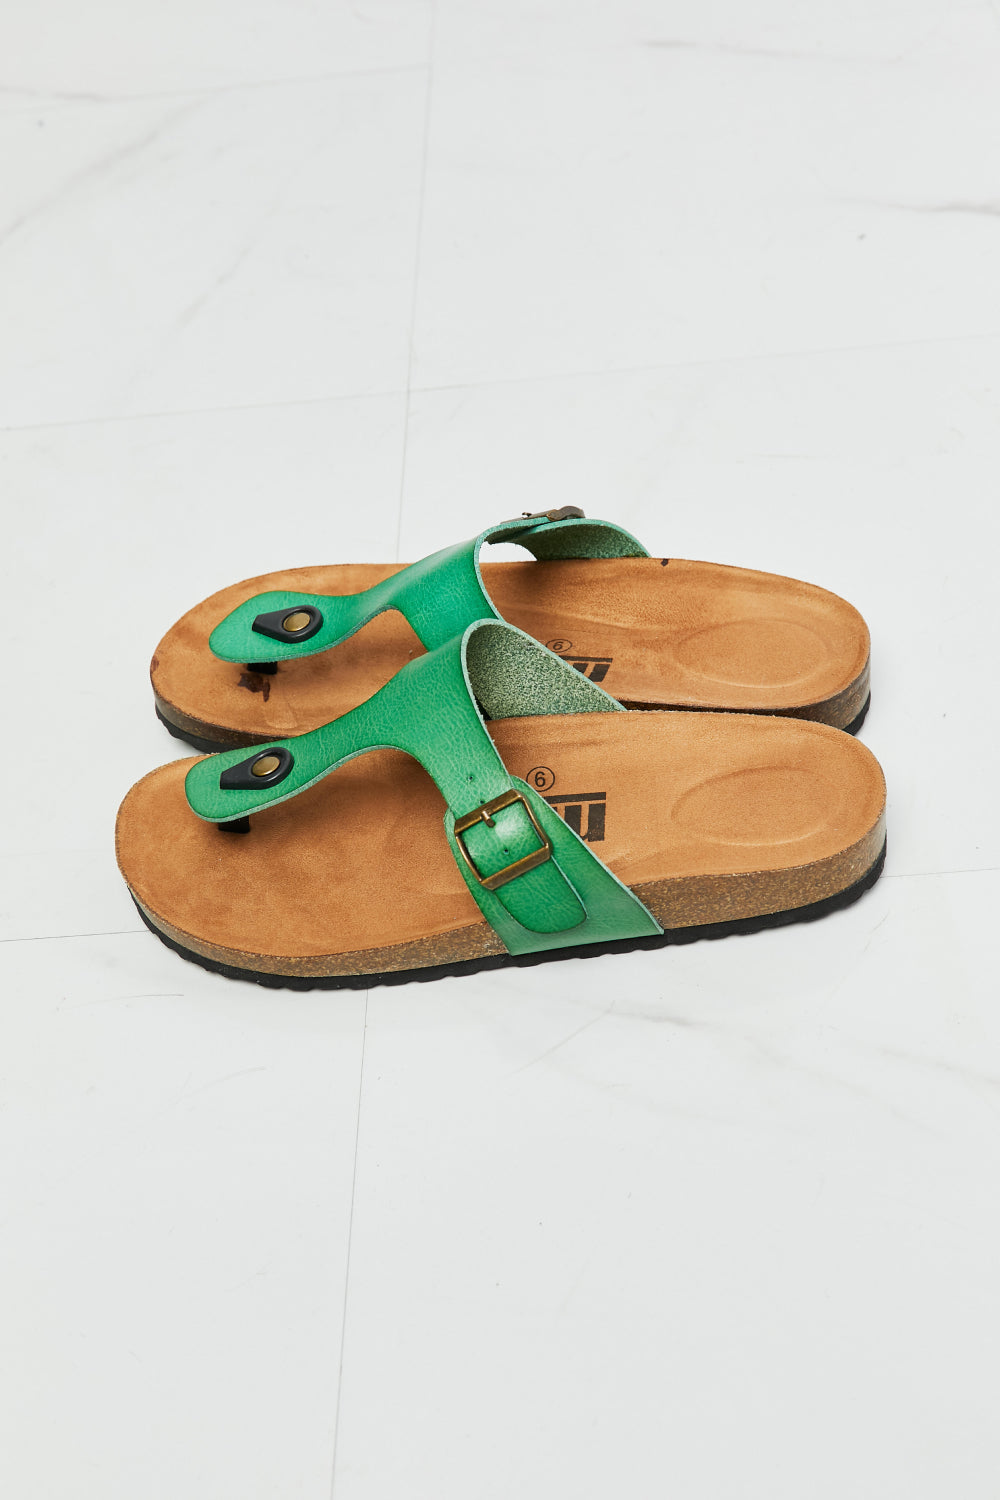 Drift Away T-Strap Sandal-Green Green Sandals by Vim&Vigor | Vim&Vigor Boutique